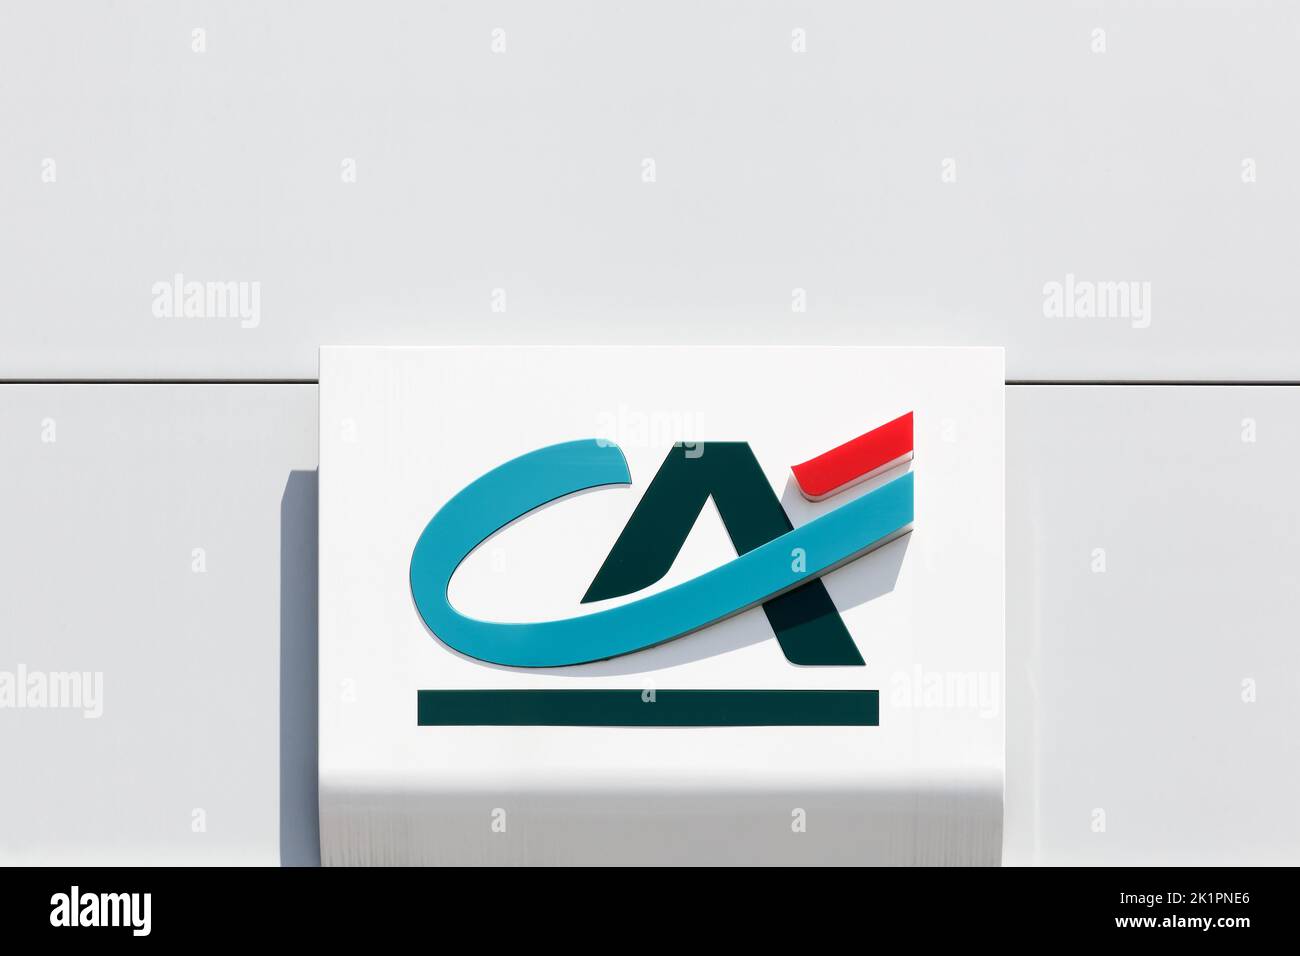 Fumel, Francia - 25 de junio de 2021: Logotipo de Credit Agricole en una pared. Credit Agricole es una red francesa de bancos cooperativos y mutuos Foto de stock